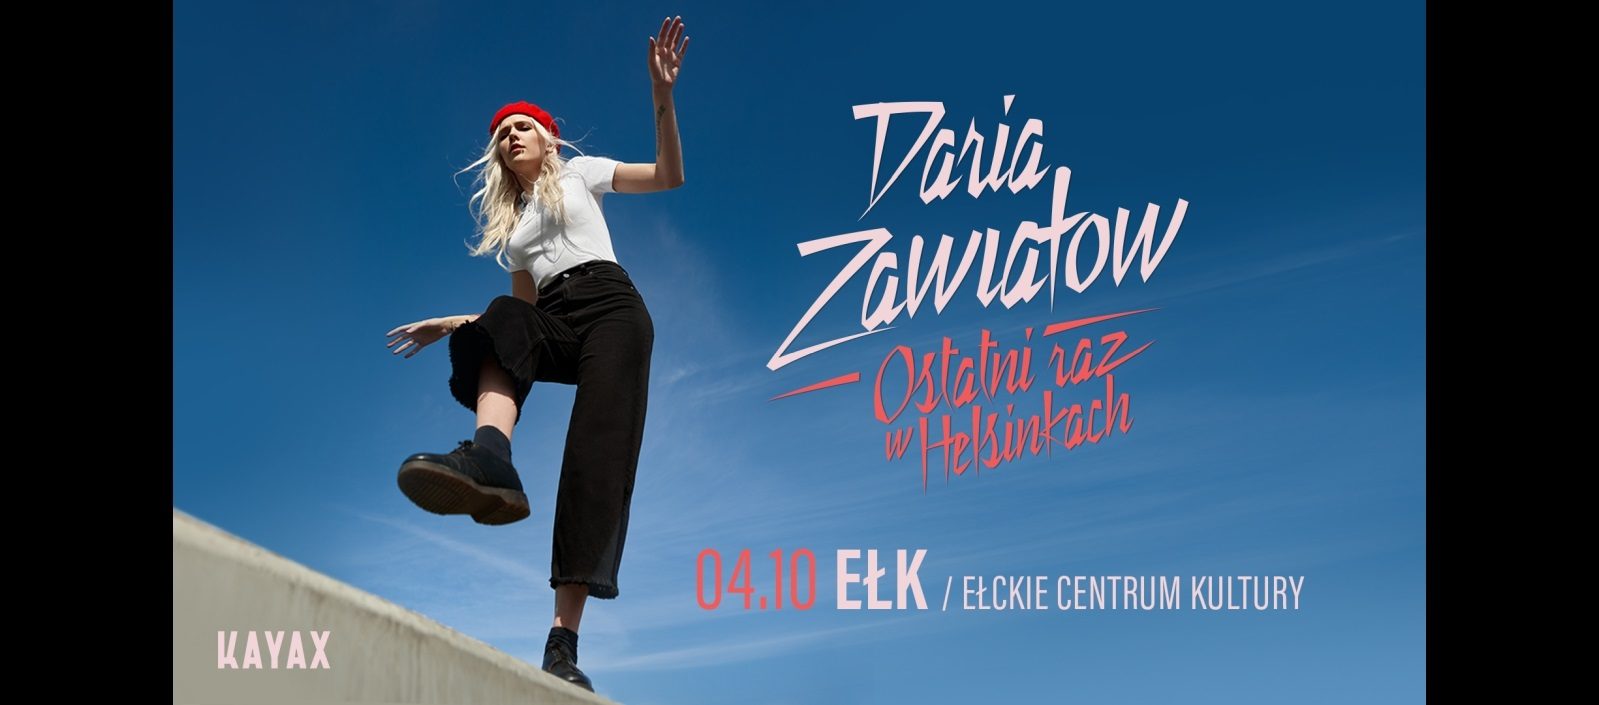 2 koncerty (17:30 i 20:00) Daria Zawiałow 